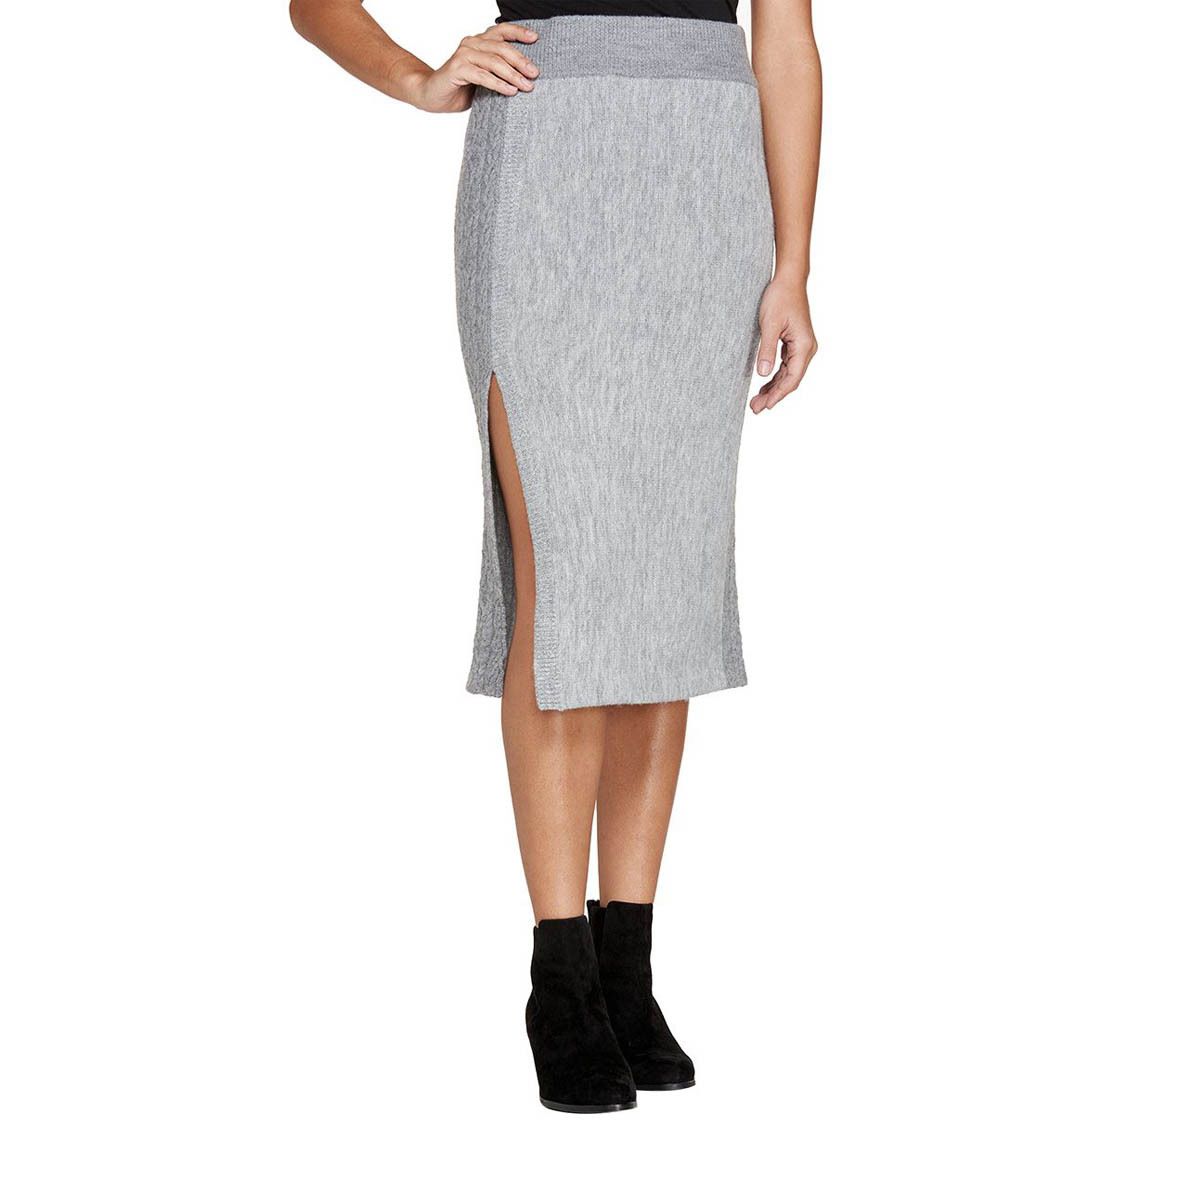 Kilda Sweater Skirt - Women